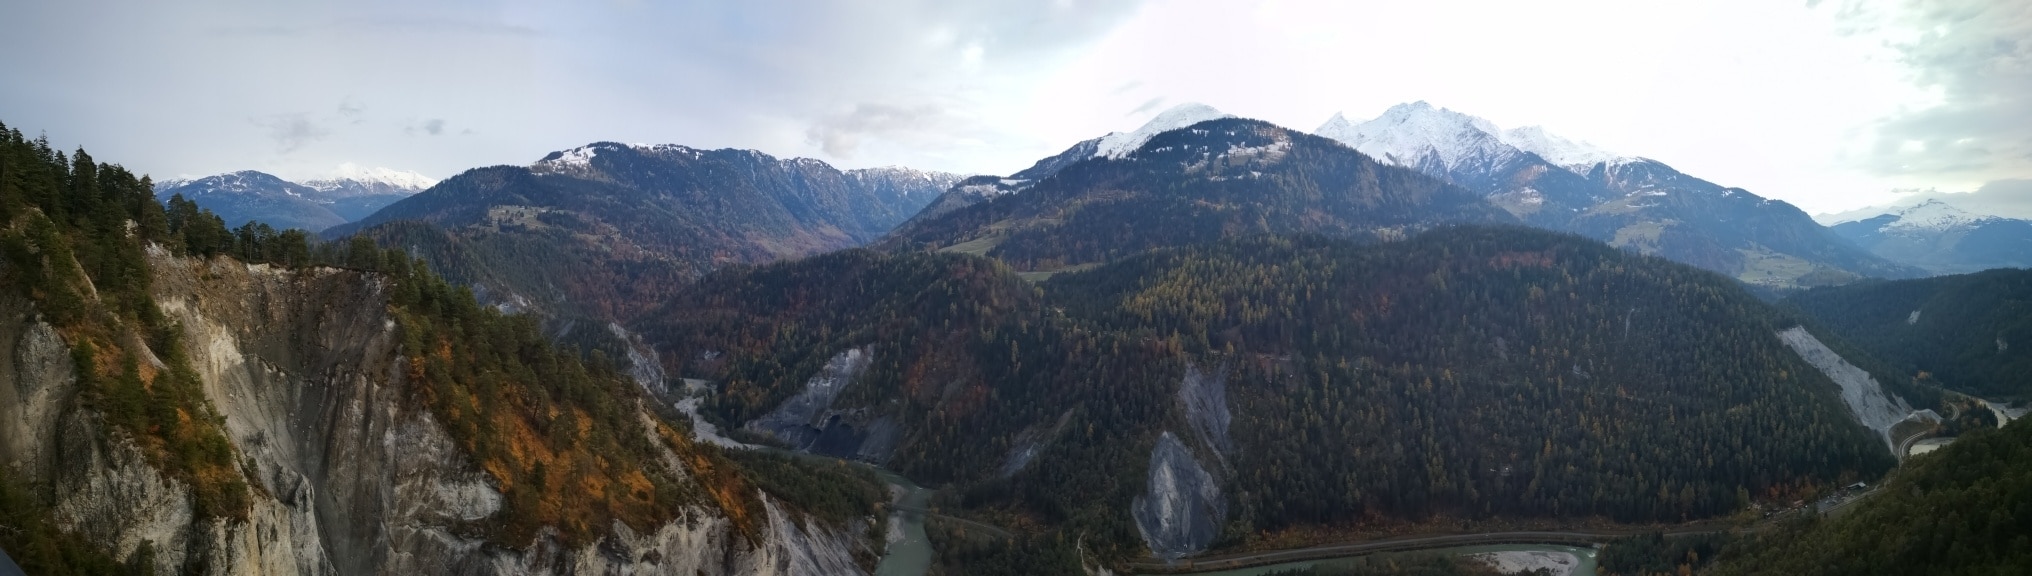 Vallée Ruinaulta, Canton des Grisons, Suisse